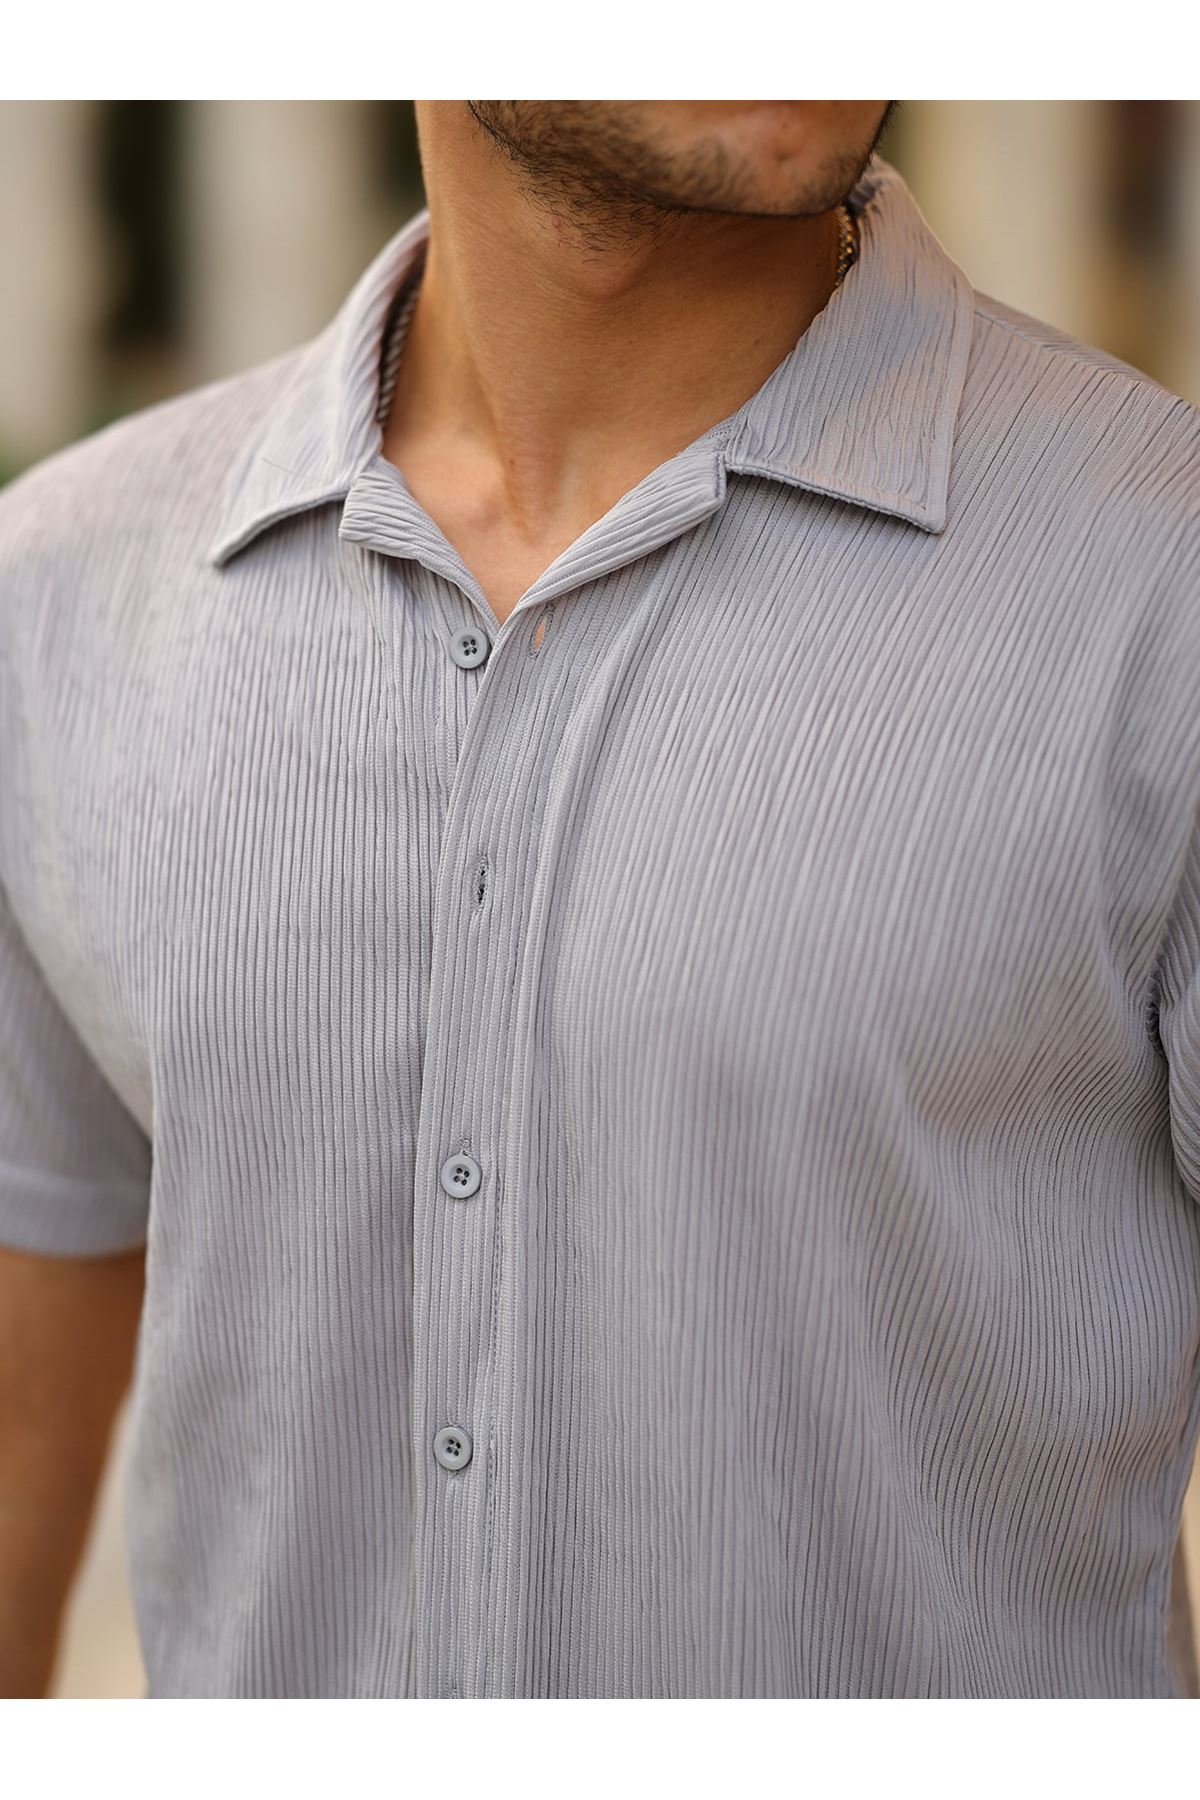 Erkek Yazlık Likralı Slim Fit Gömlek Yaka Kısa Kollu Gömlek GRİ